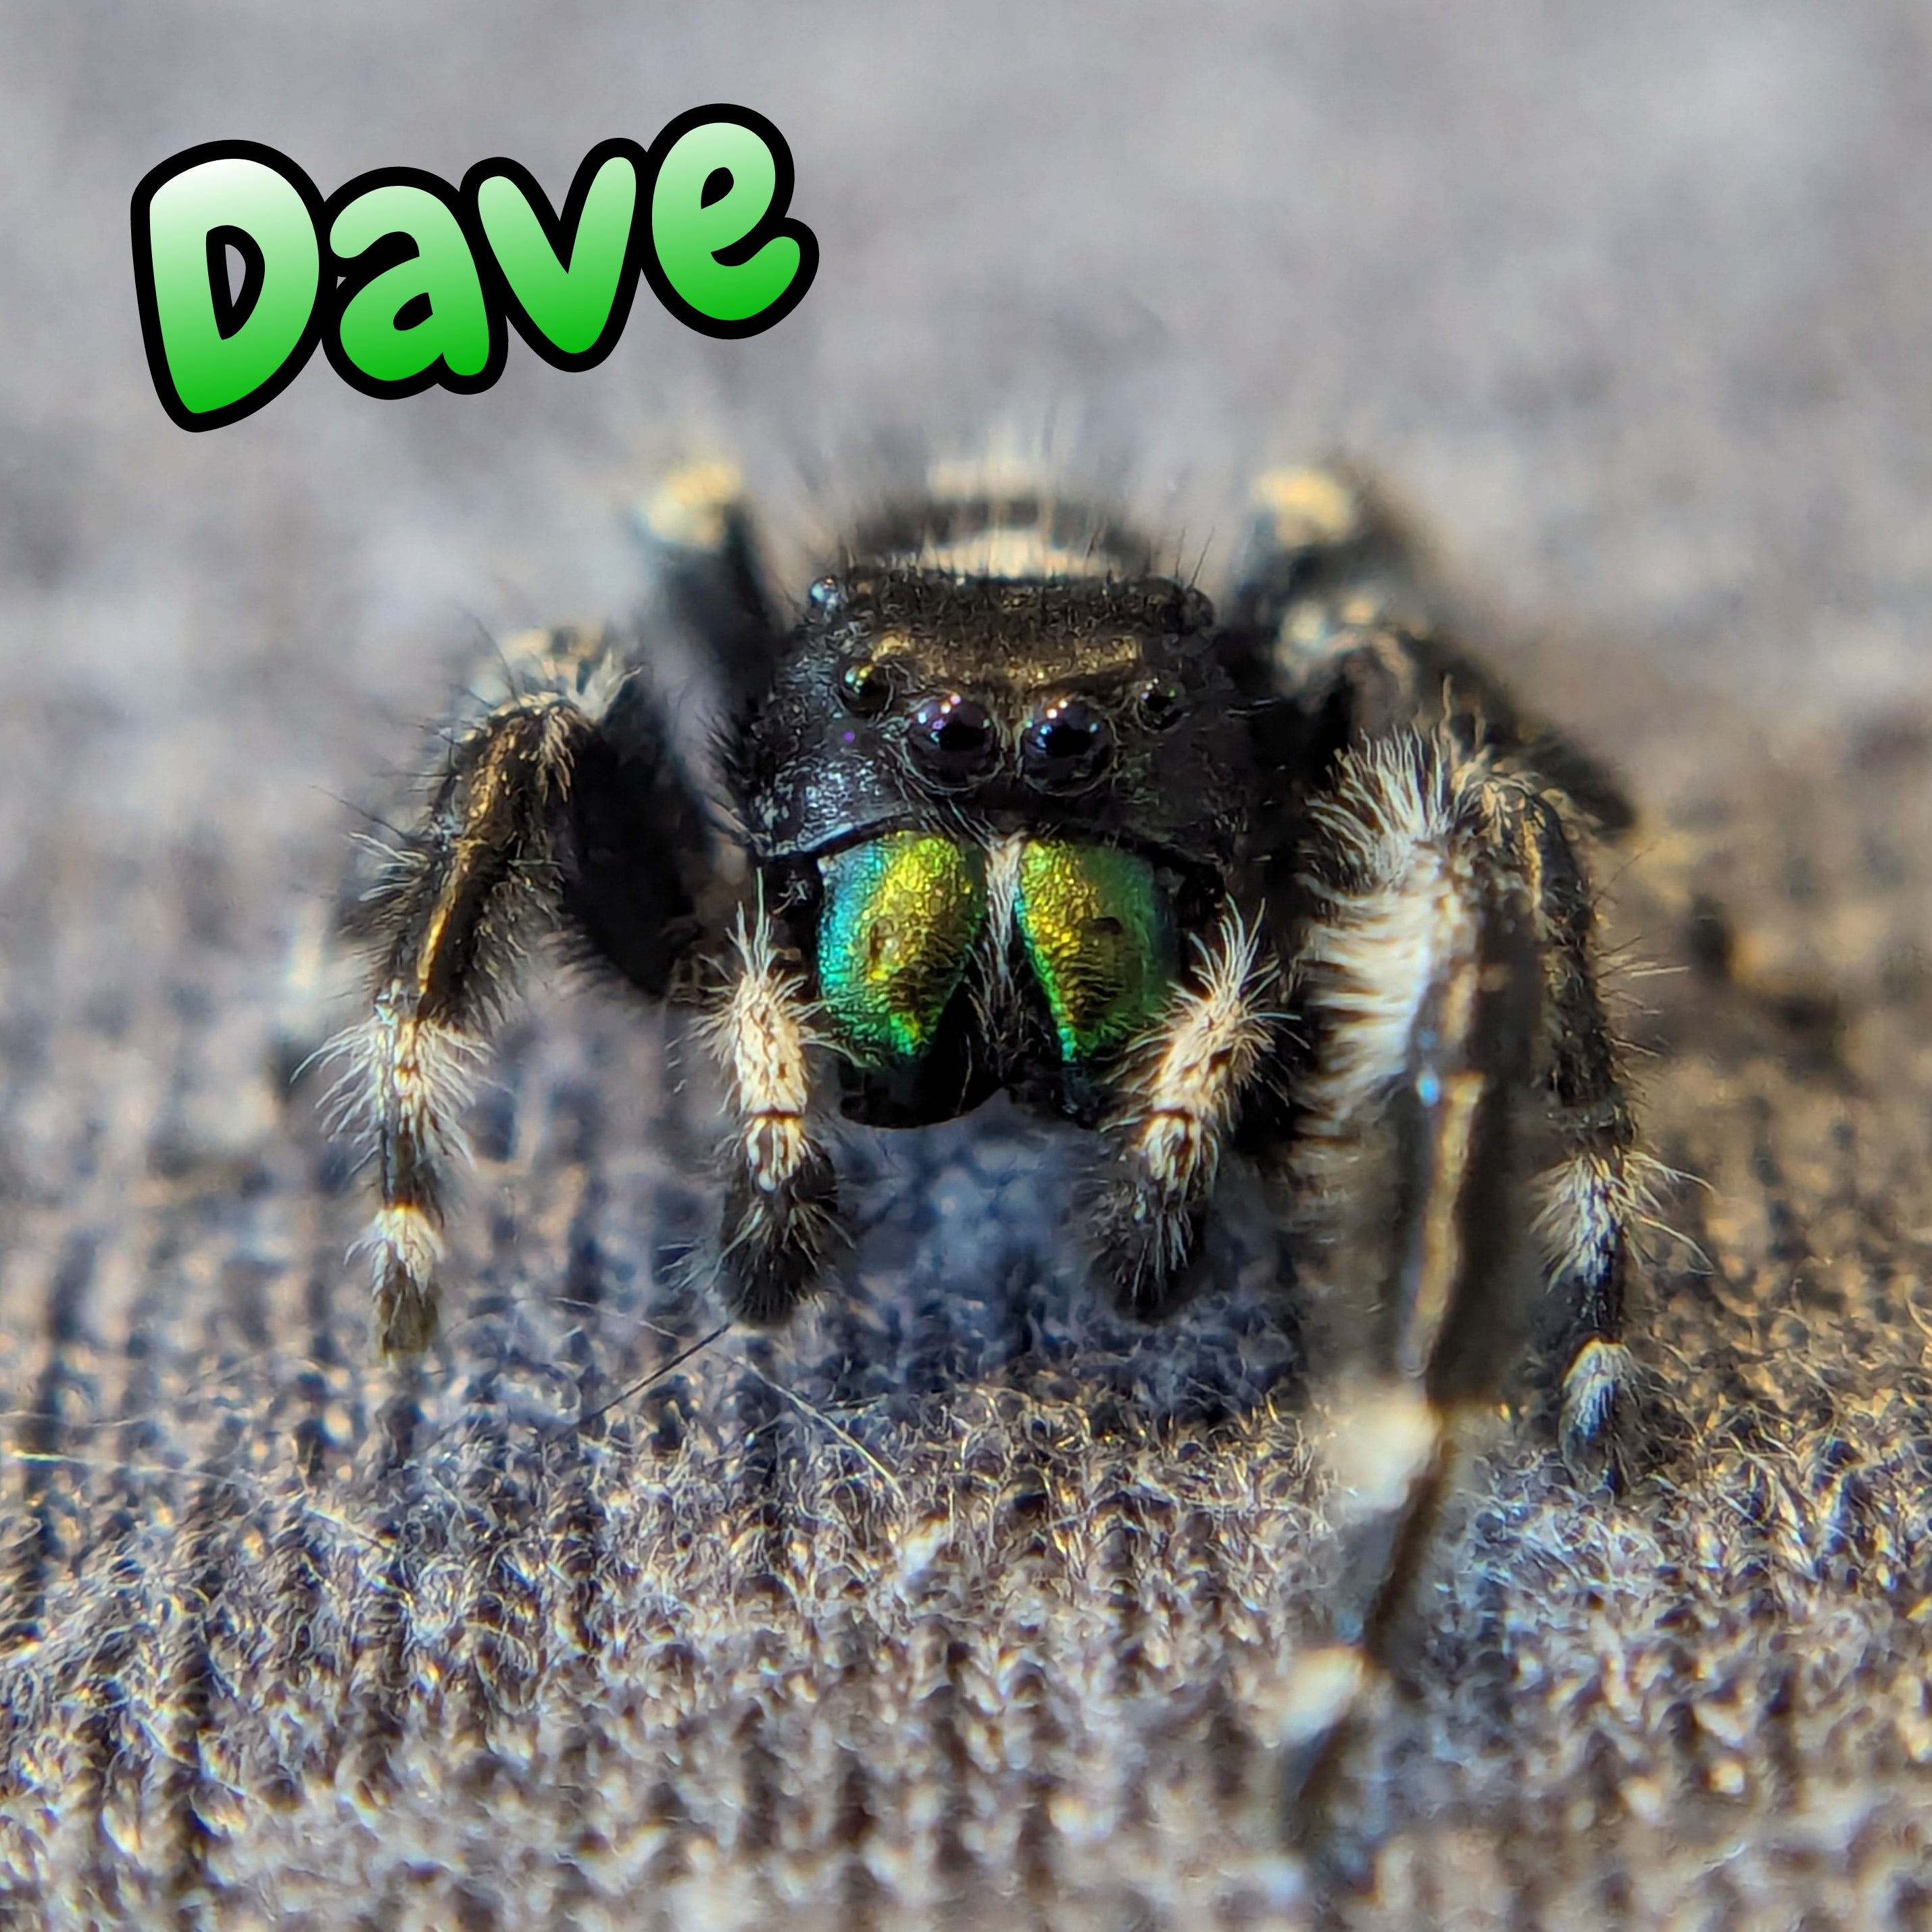 Audax Jumping Spider "Dave"